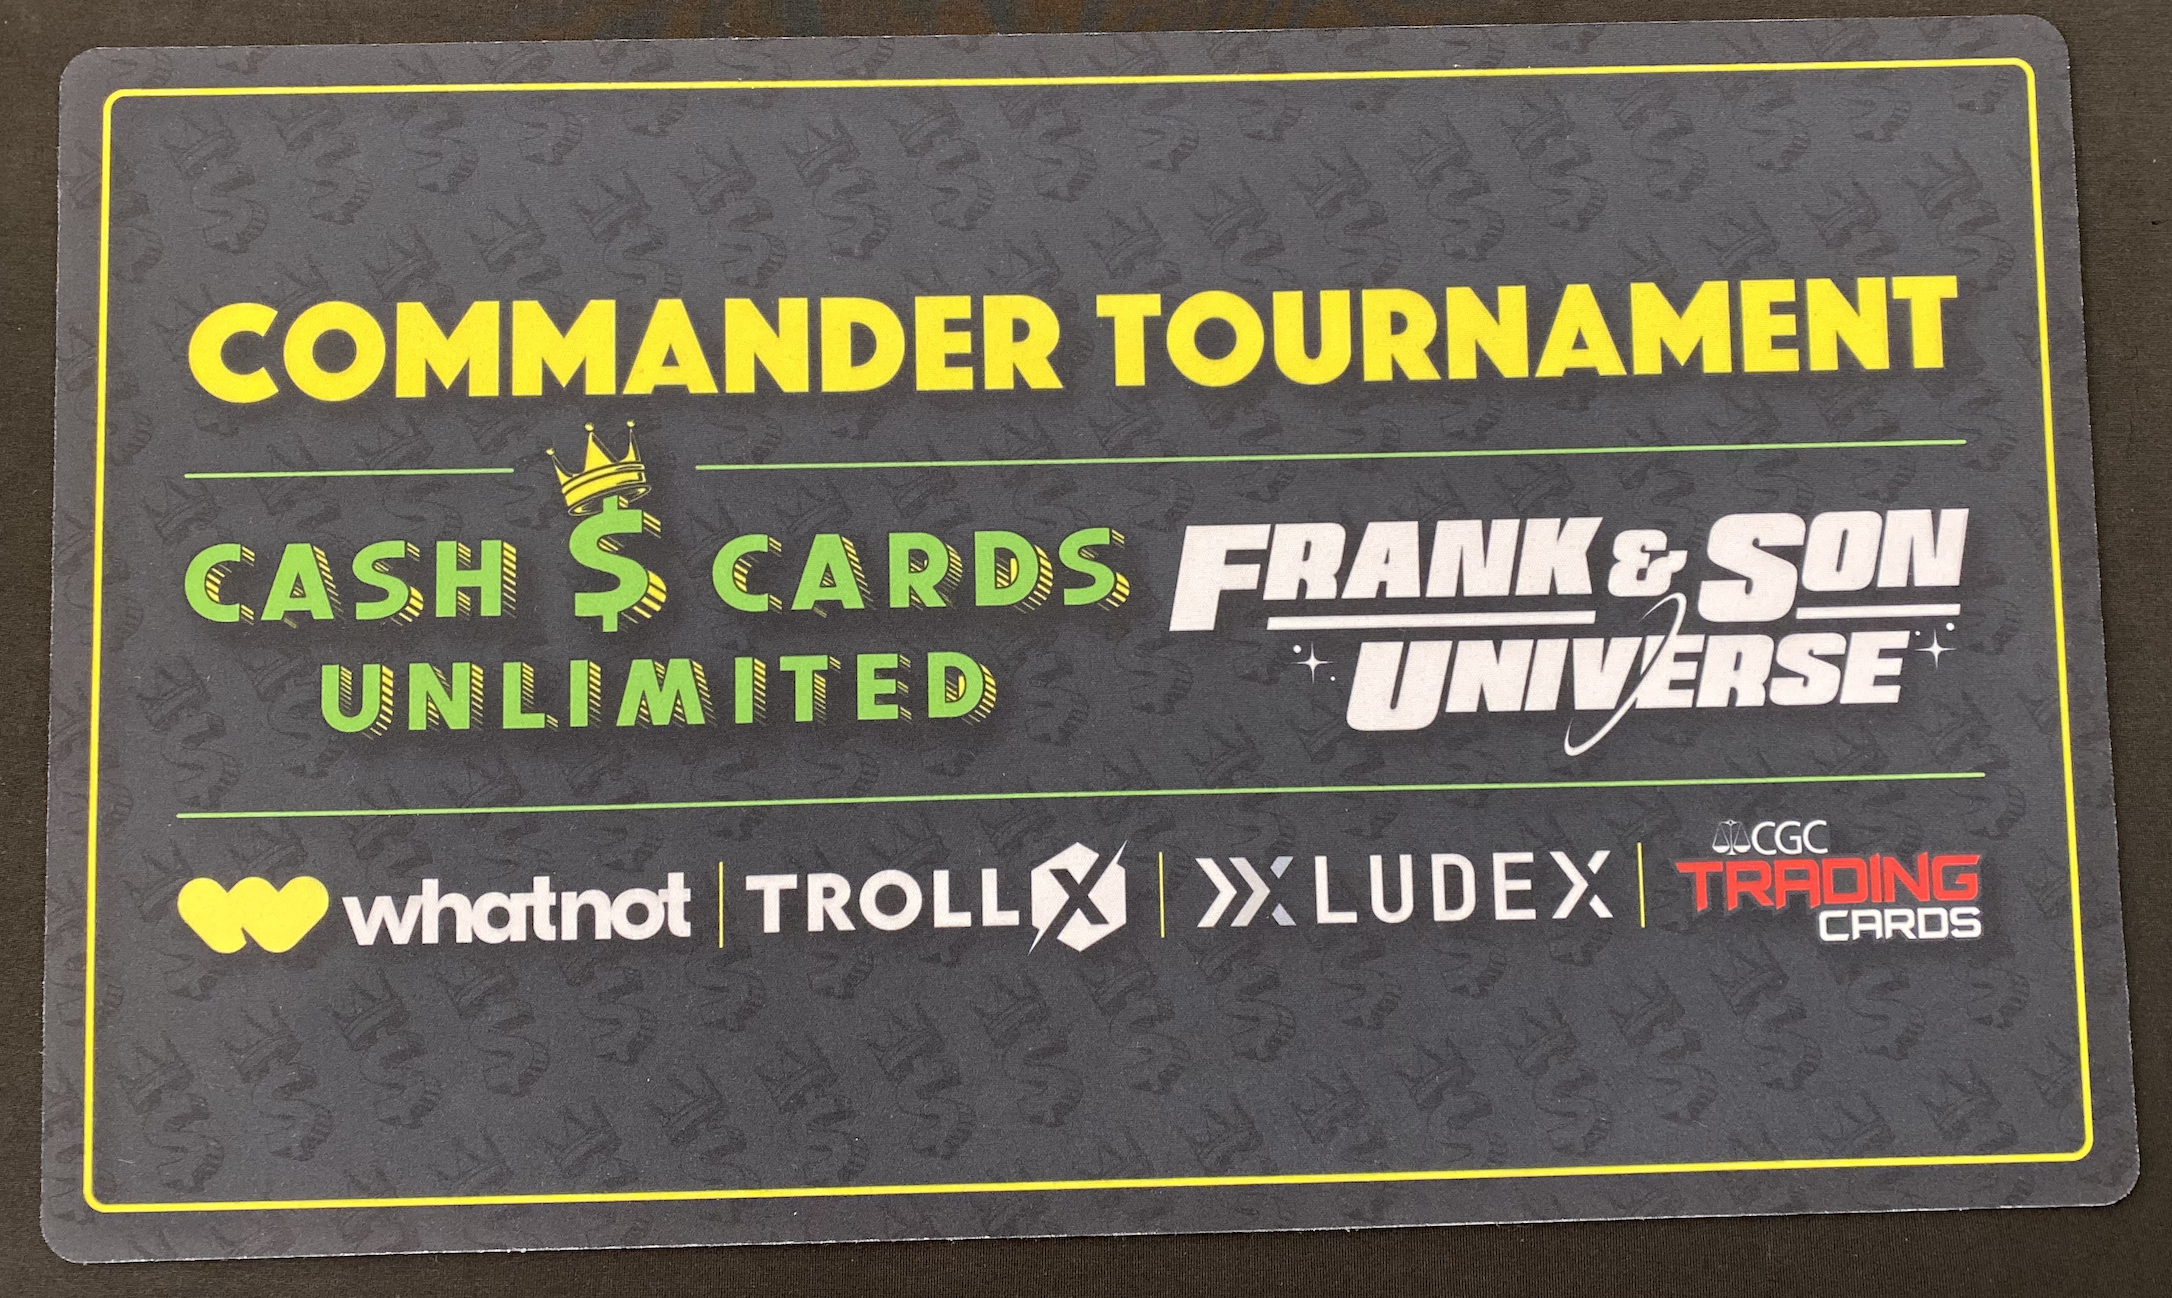 Cash Cards Unlimited Playmat (Commander Tournament)